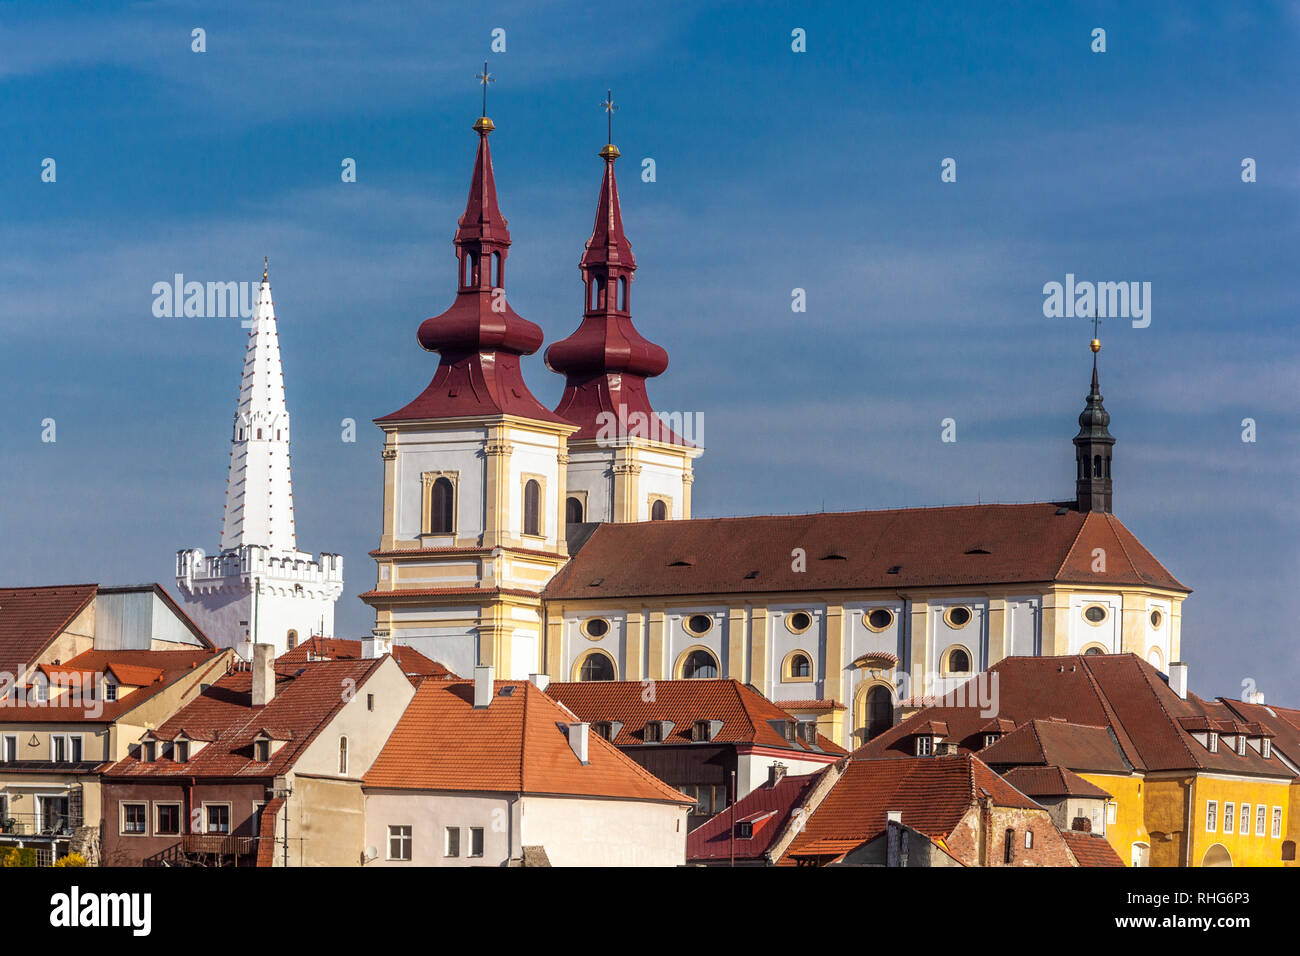 Église baroque tchèque typique de l'élévation de la Sainte Croix et tour de l'Hôtel de ville gothique blanc, architecture baroque de la République tchèque Kadan Banque D'Images